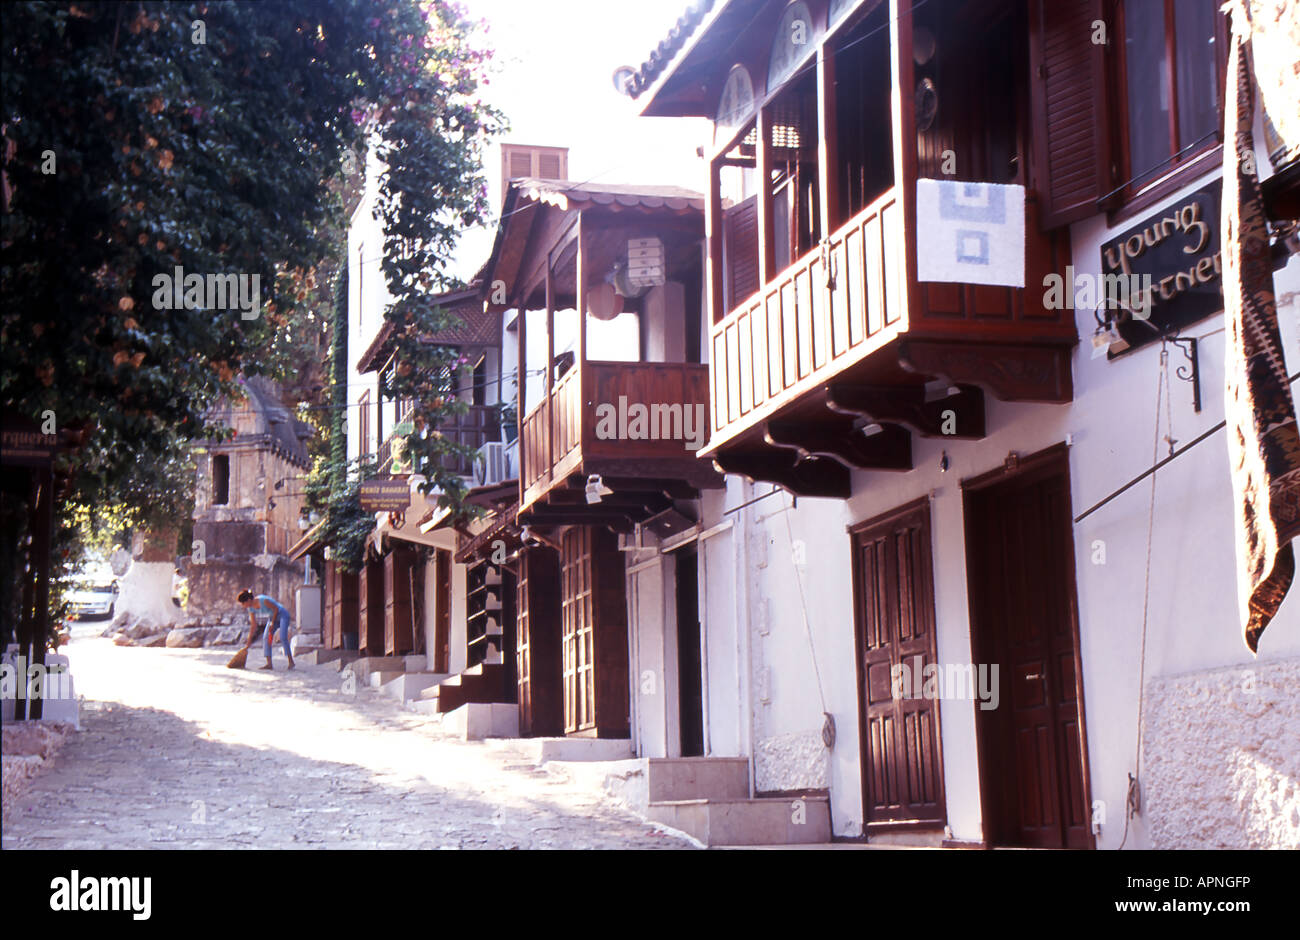 Village street Kas Turkey Stock Photo